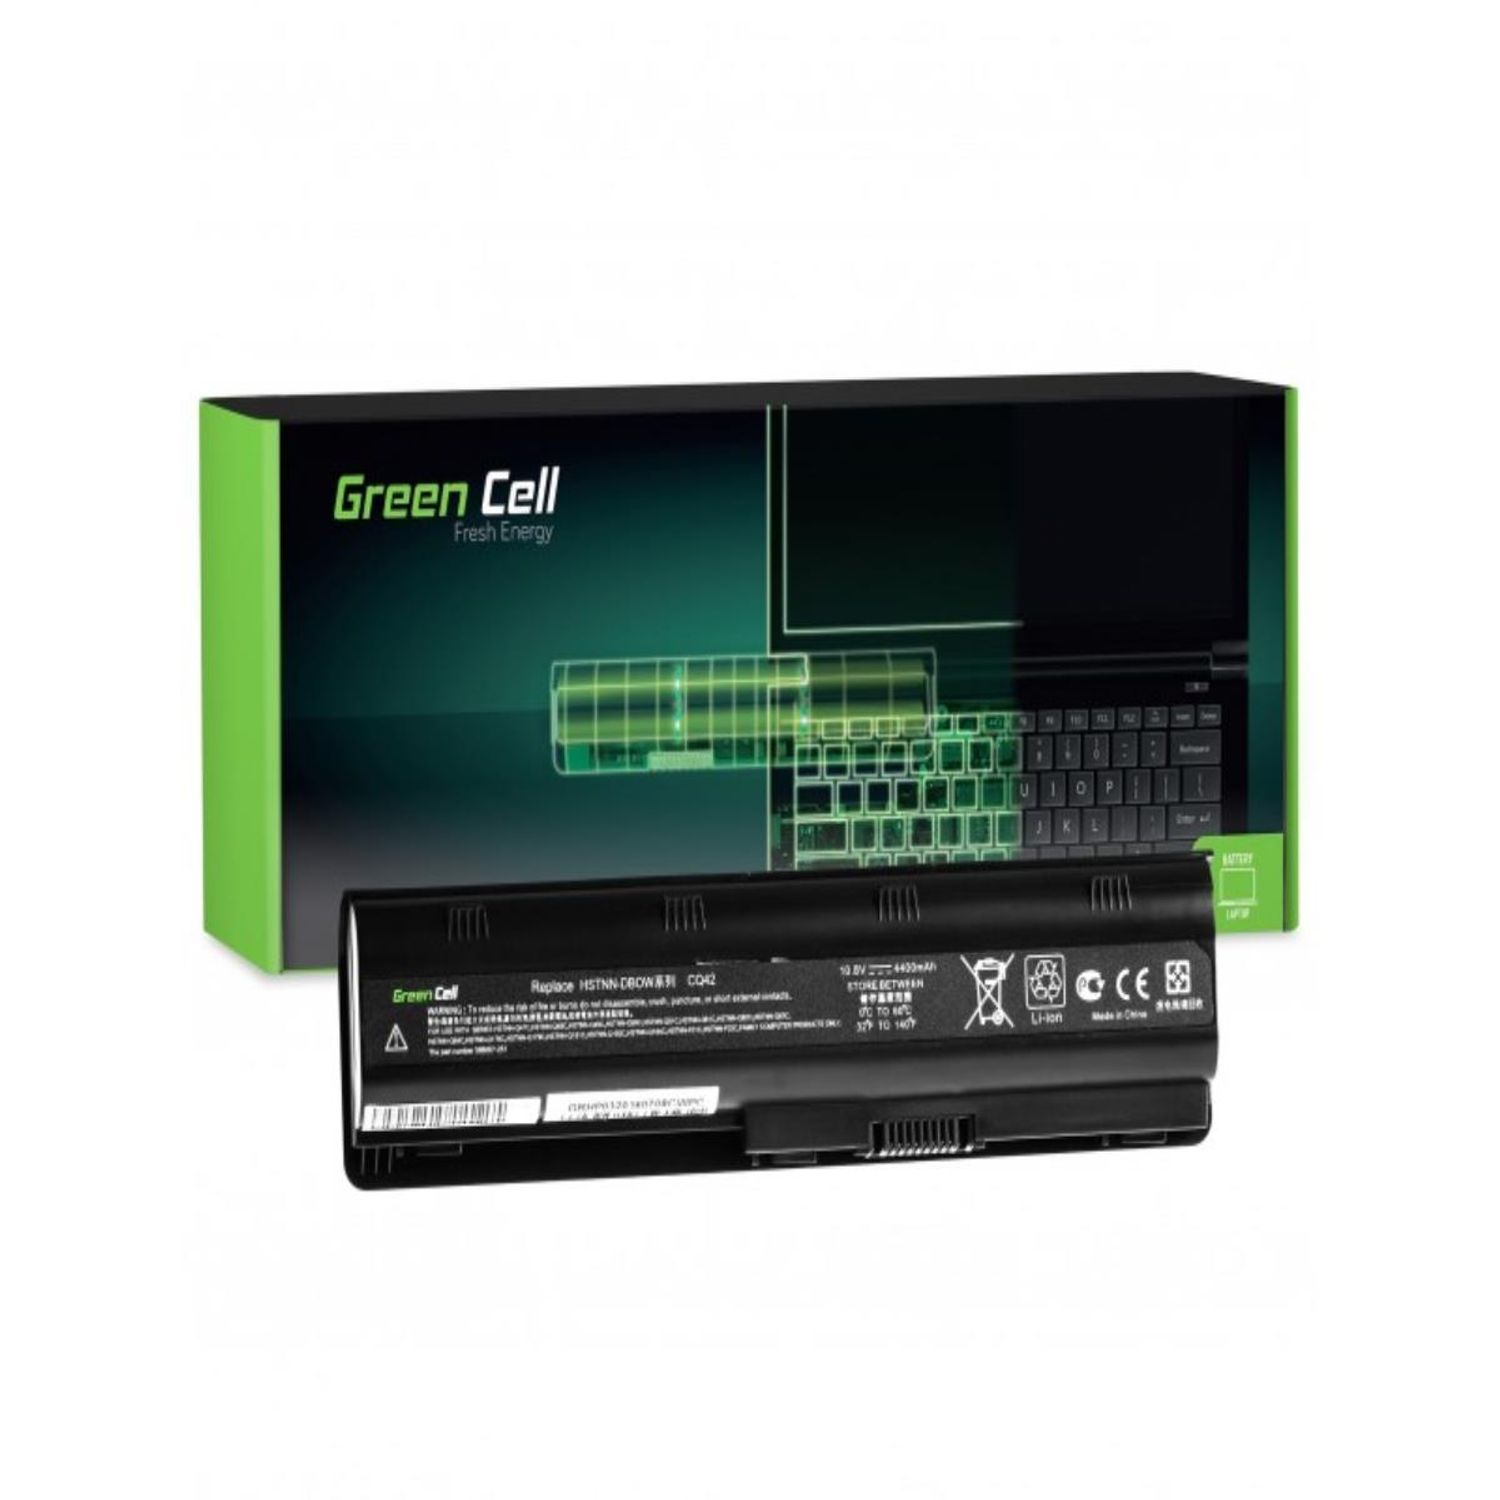 GREEN CELL / 10.8 650 Volt, Akku, MU06 Akku Laptop 635 Lithium-Ionen-Akku mAh Batterien für HP